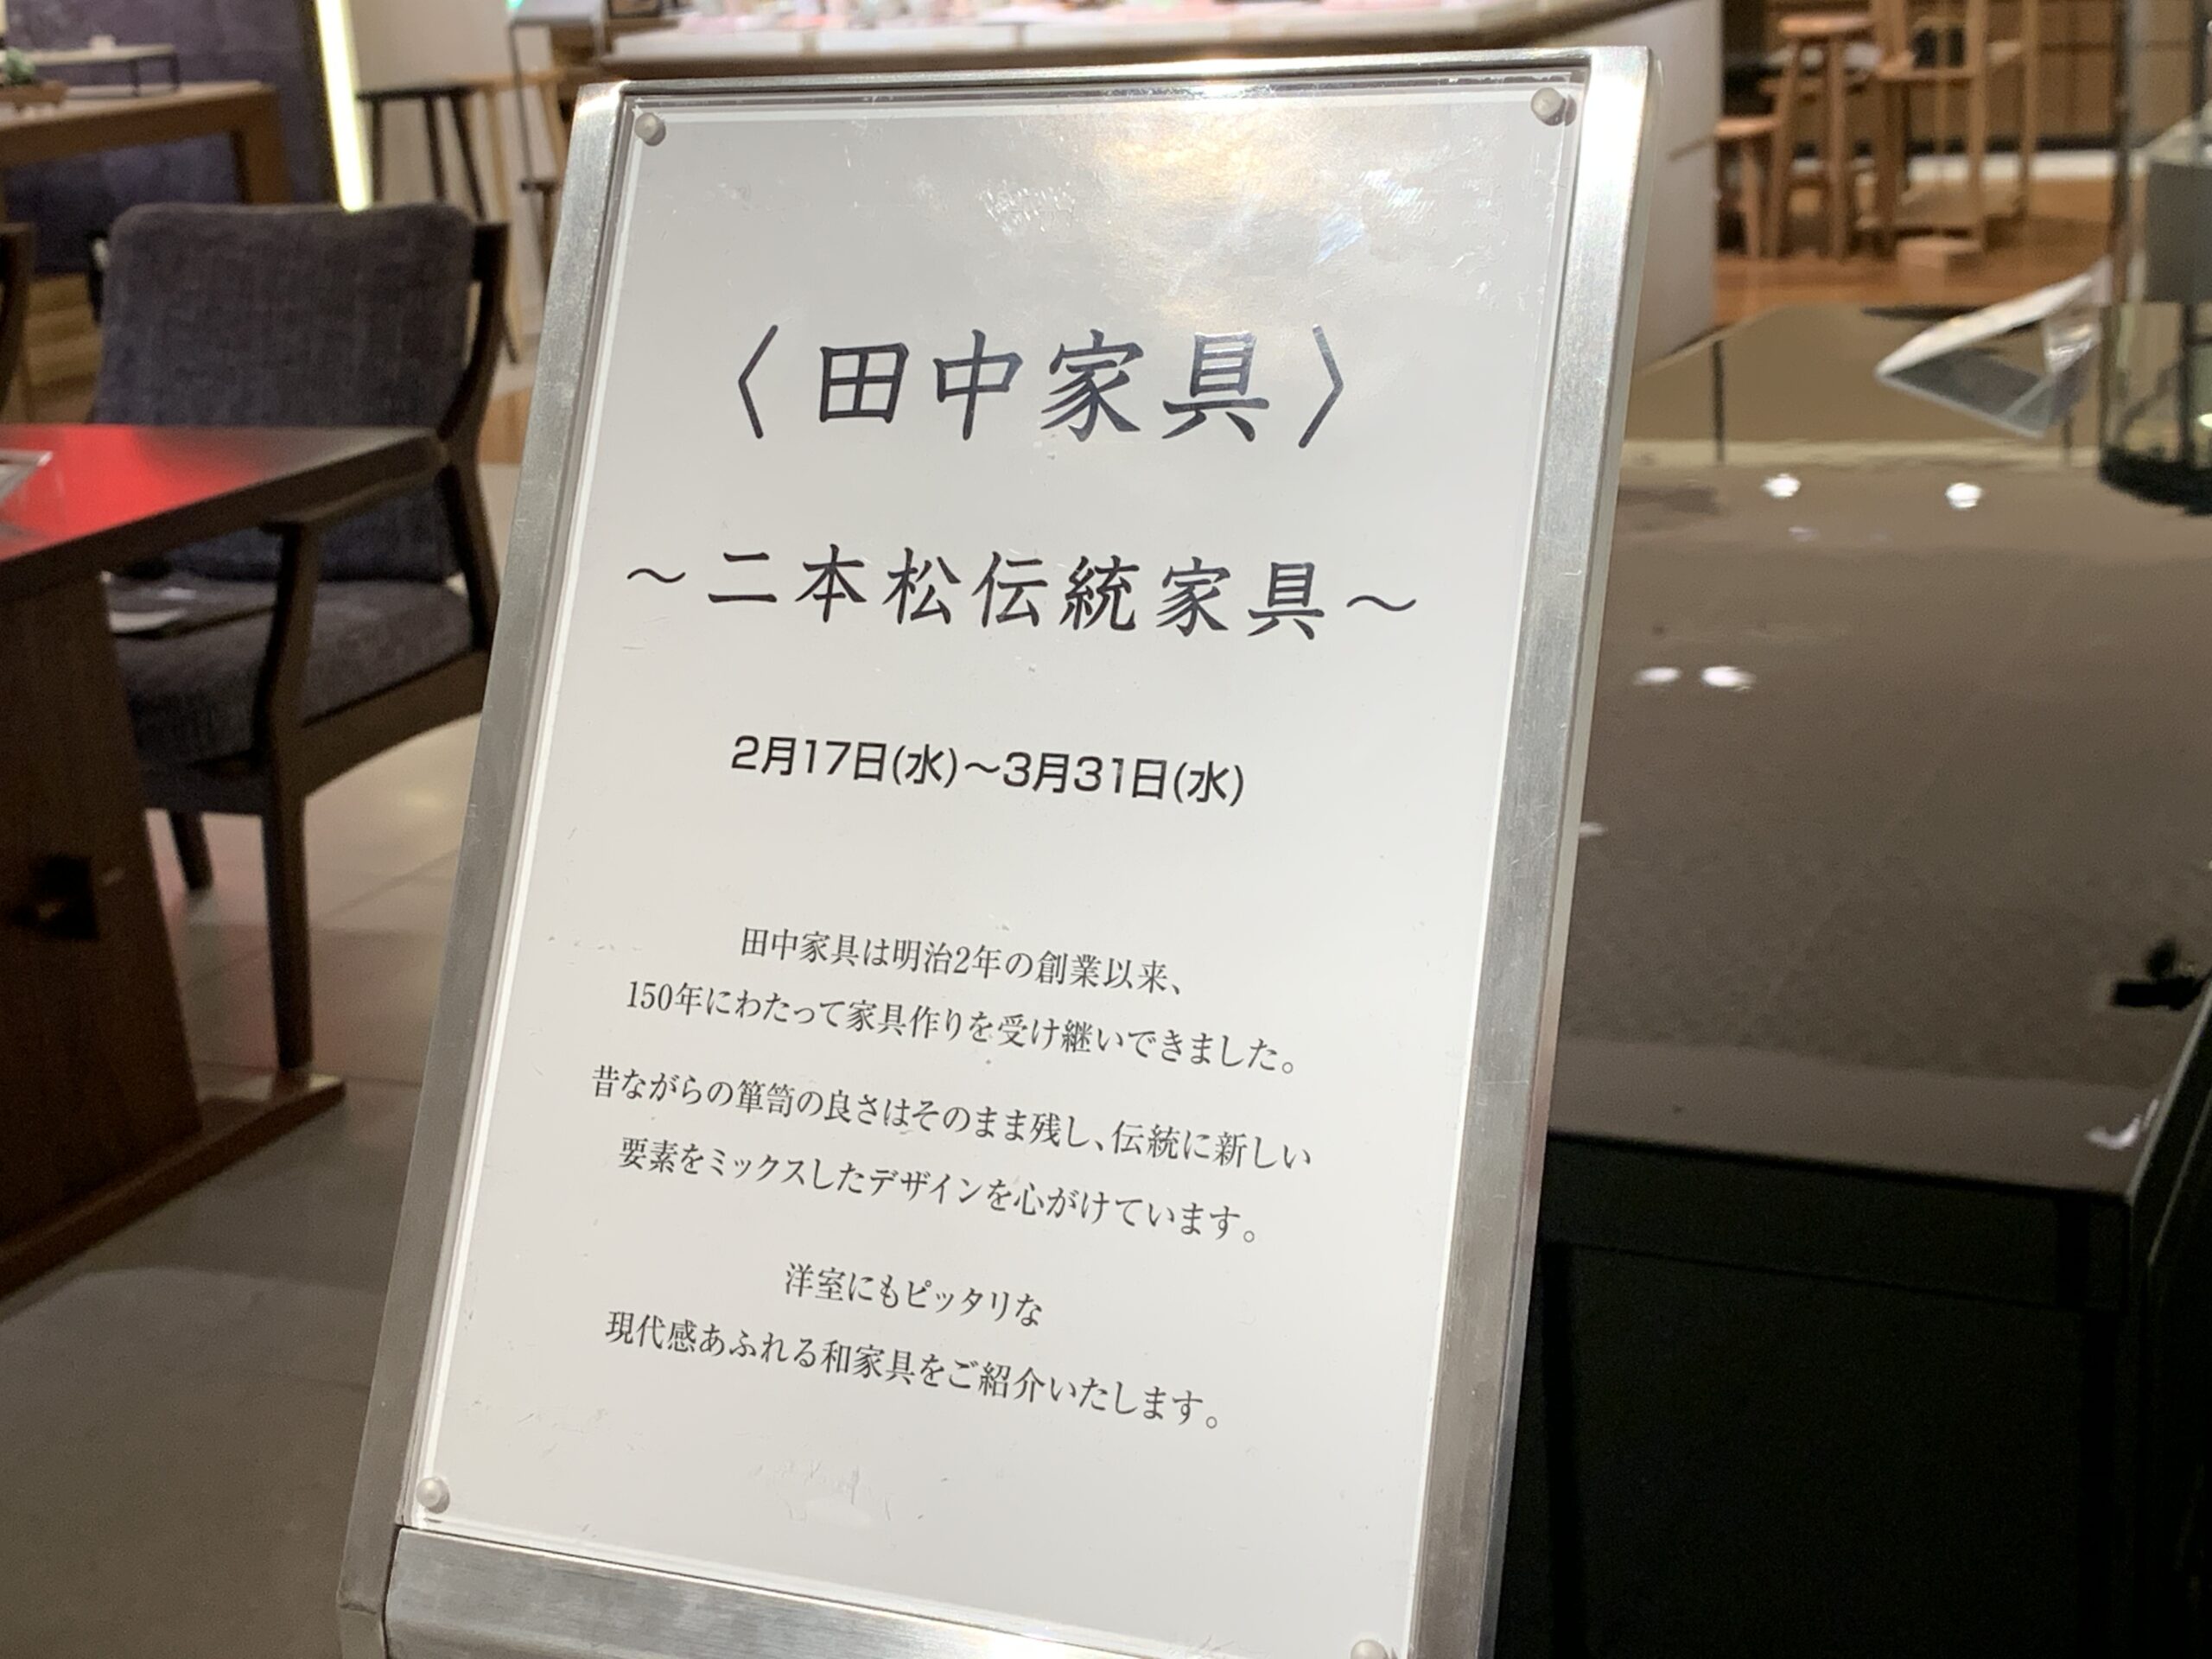 "Nihonmatsu Traditional Furniture Exhibition" at Ginza Mitsukoshi.